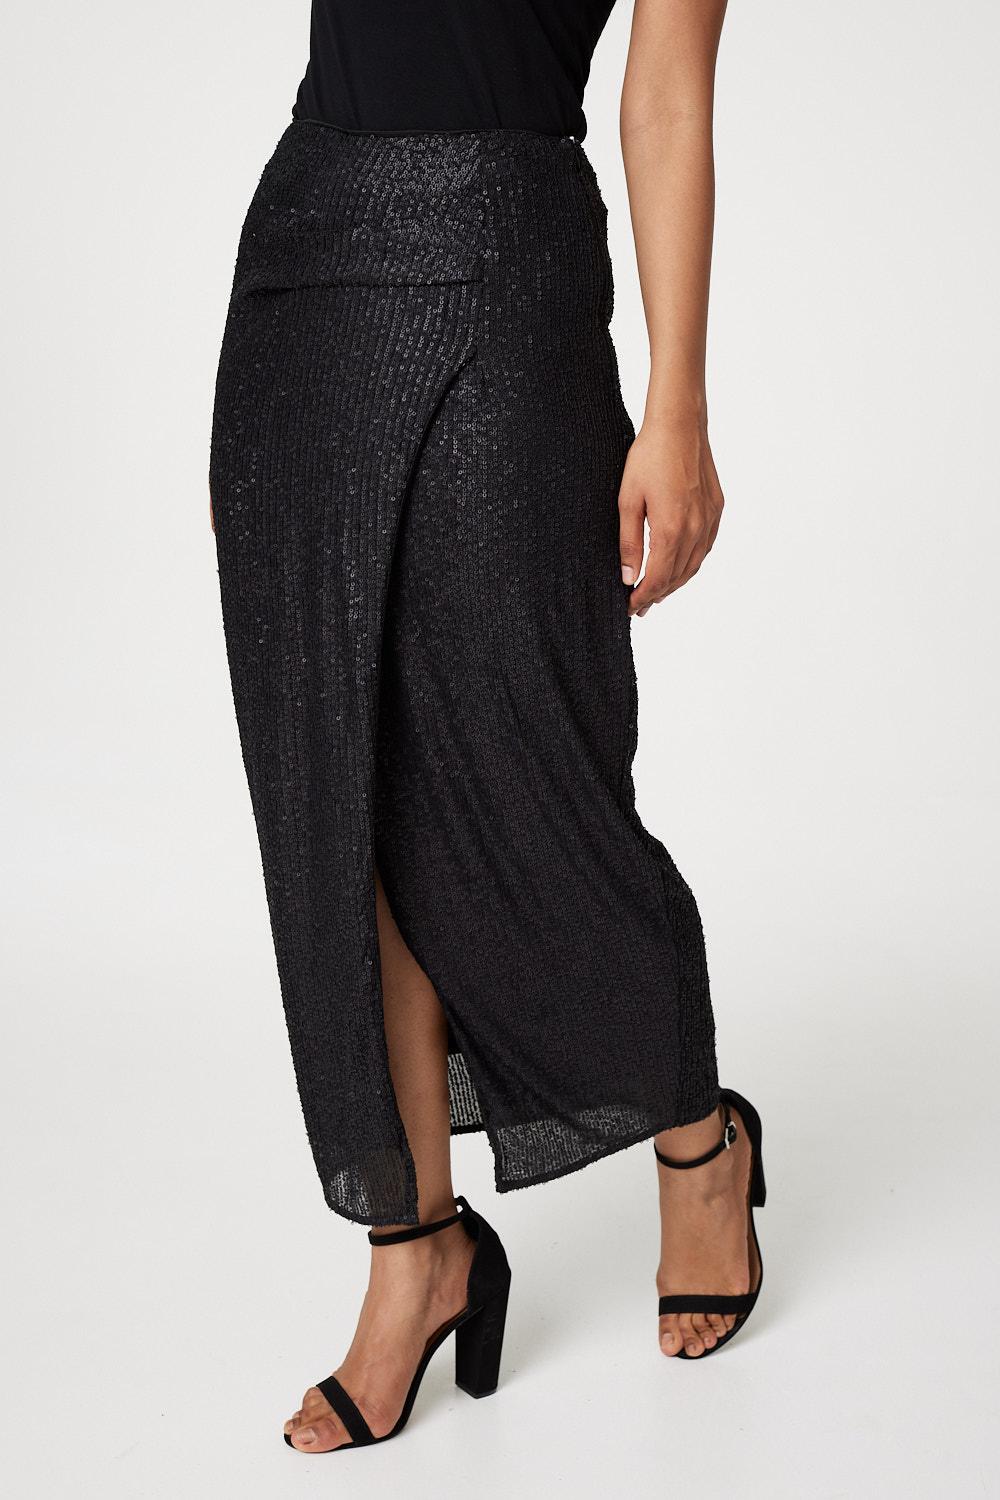 Black | Sequin High Waist Wrap Skirt